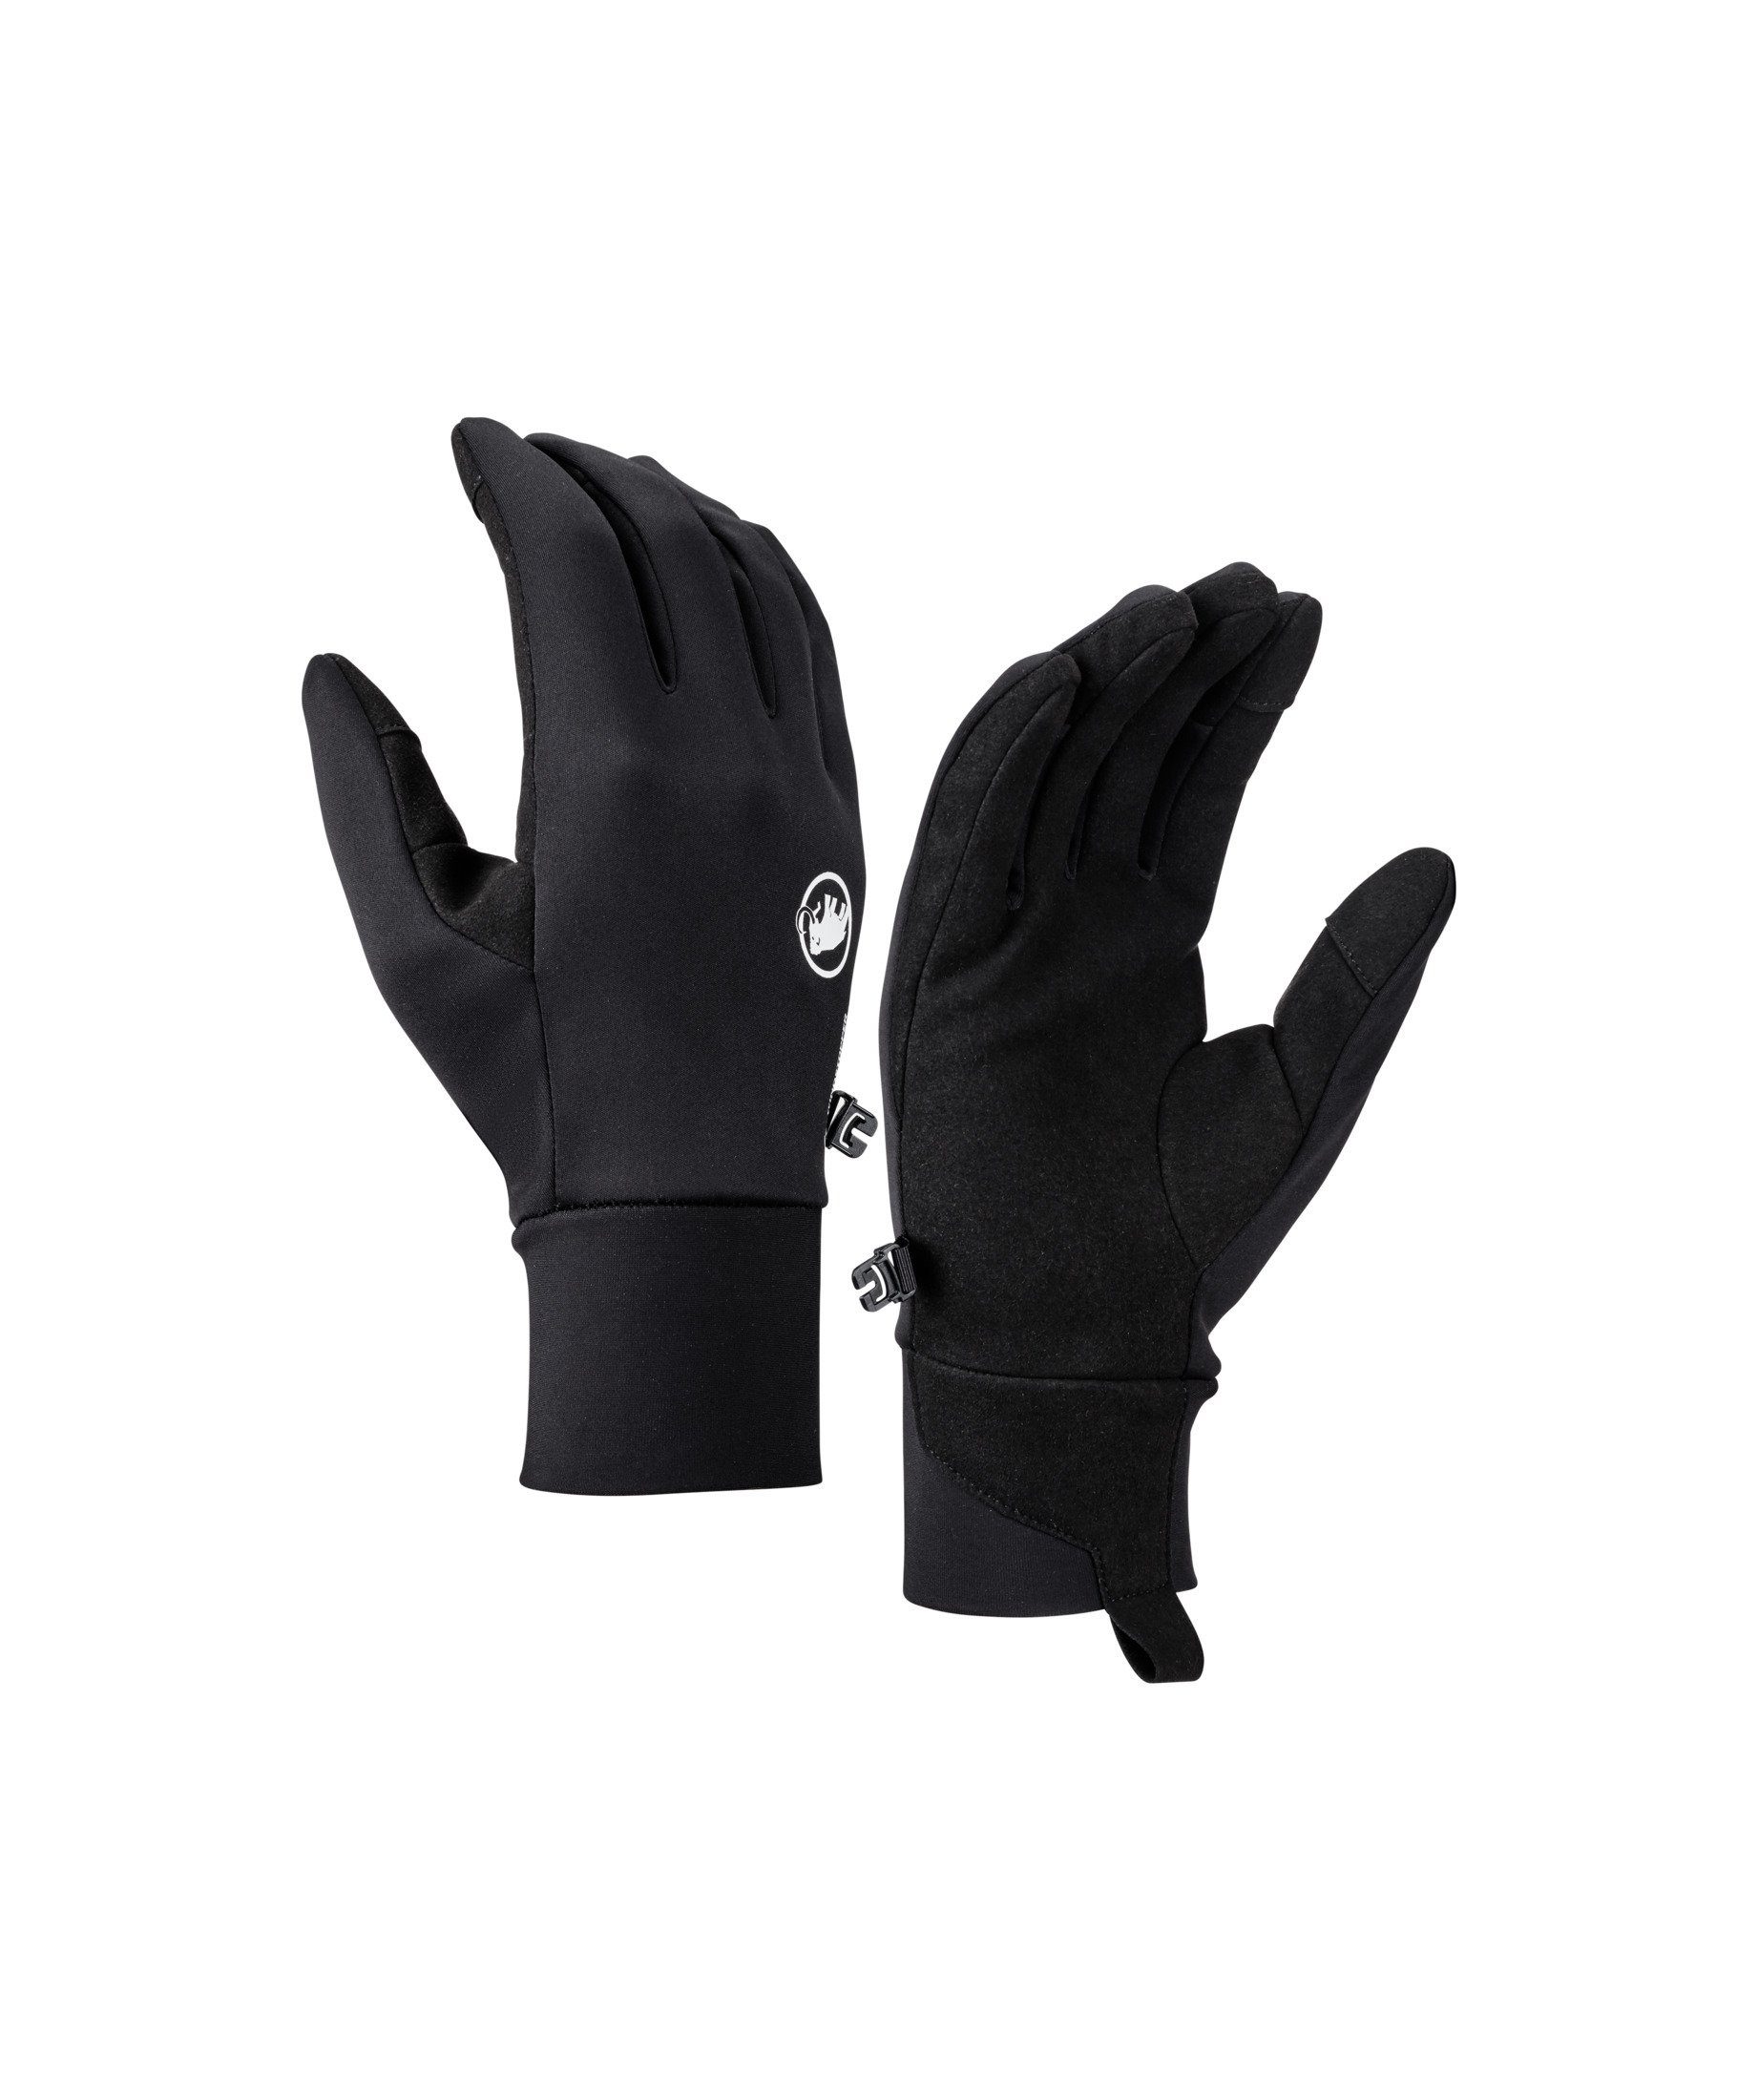 Mammut Multisporthandschuhe Astro Glove Astro Glove, Handfläche aus  robustem Synthetikleder für bessere Abriebfestigkeit